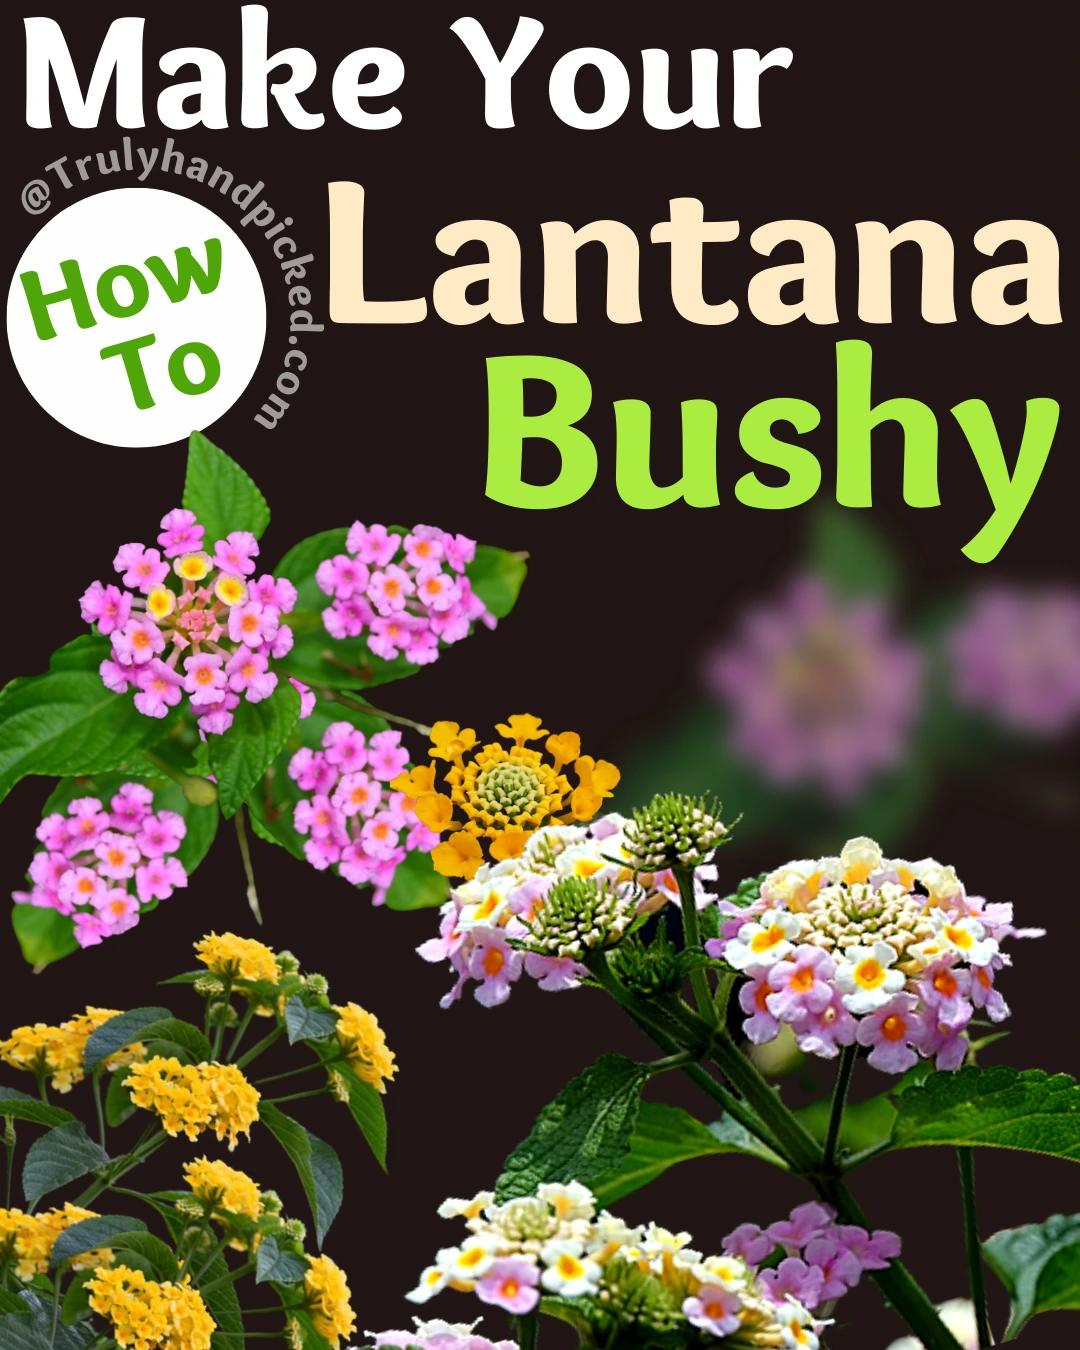 How to make your lantana bushy and why to deadhead lantana